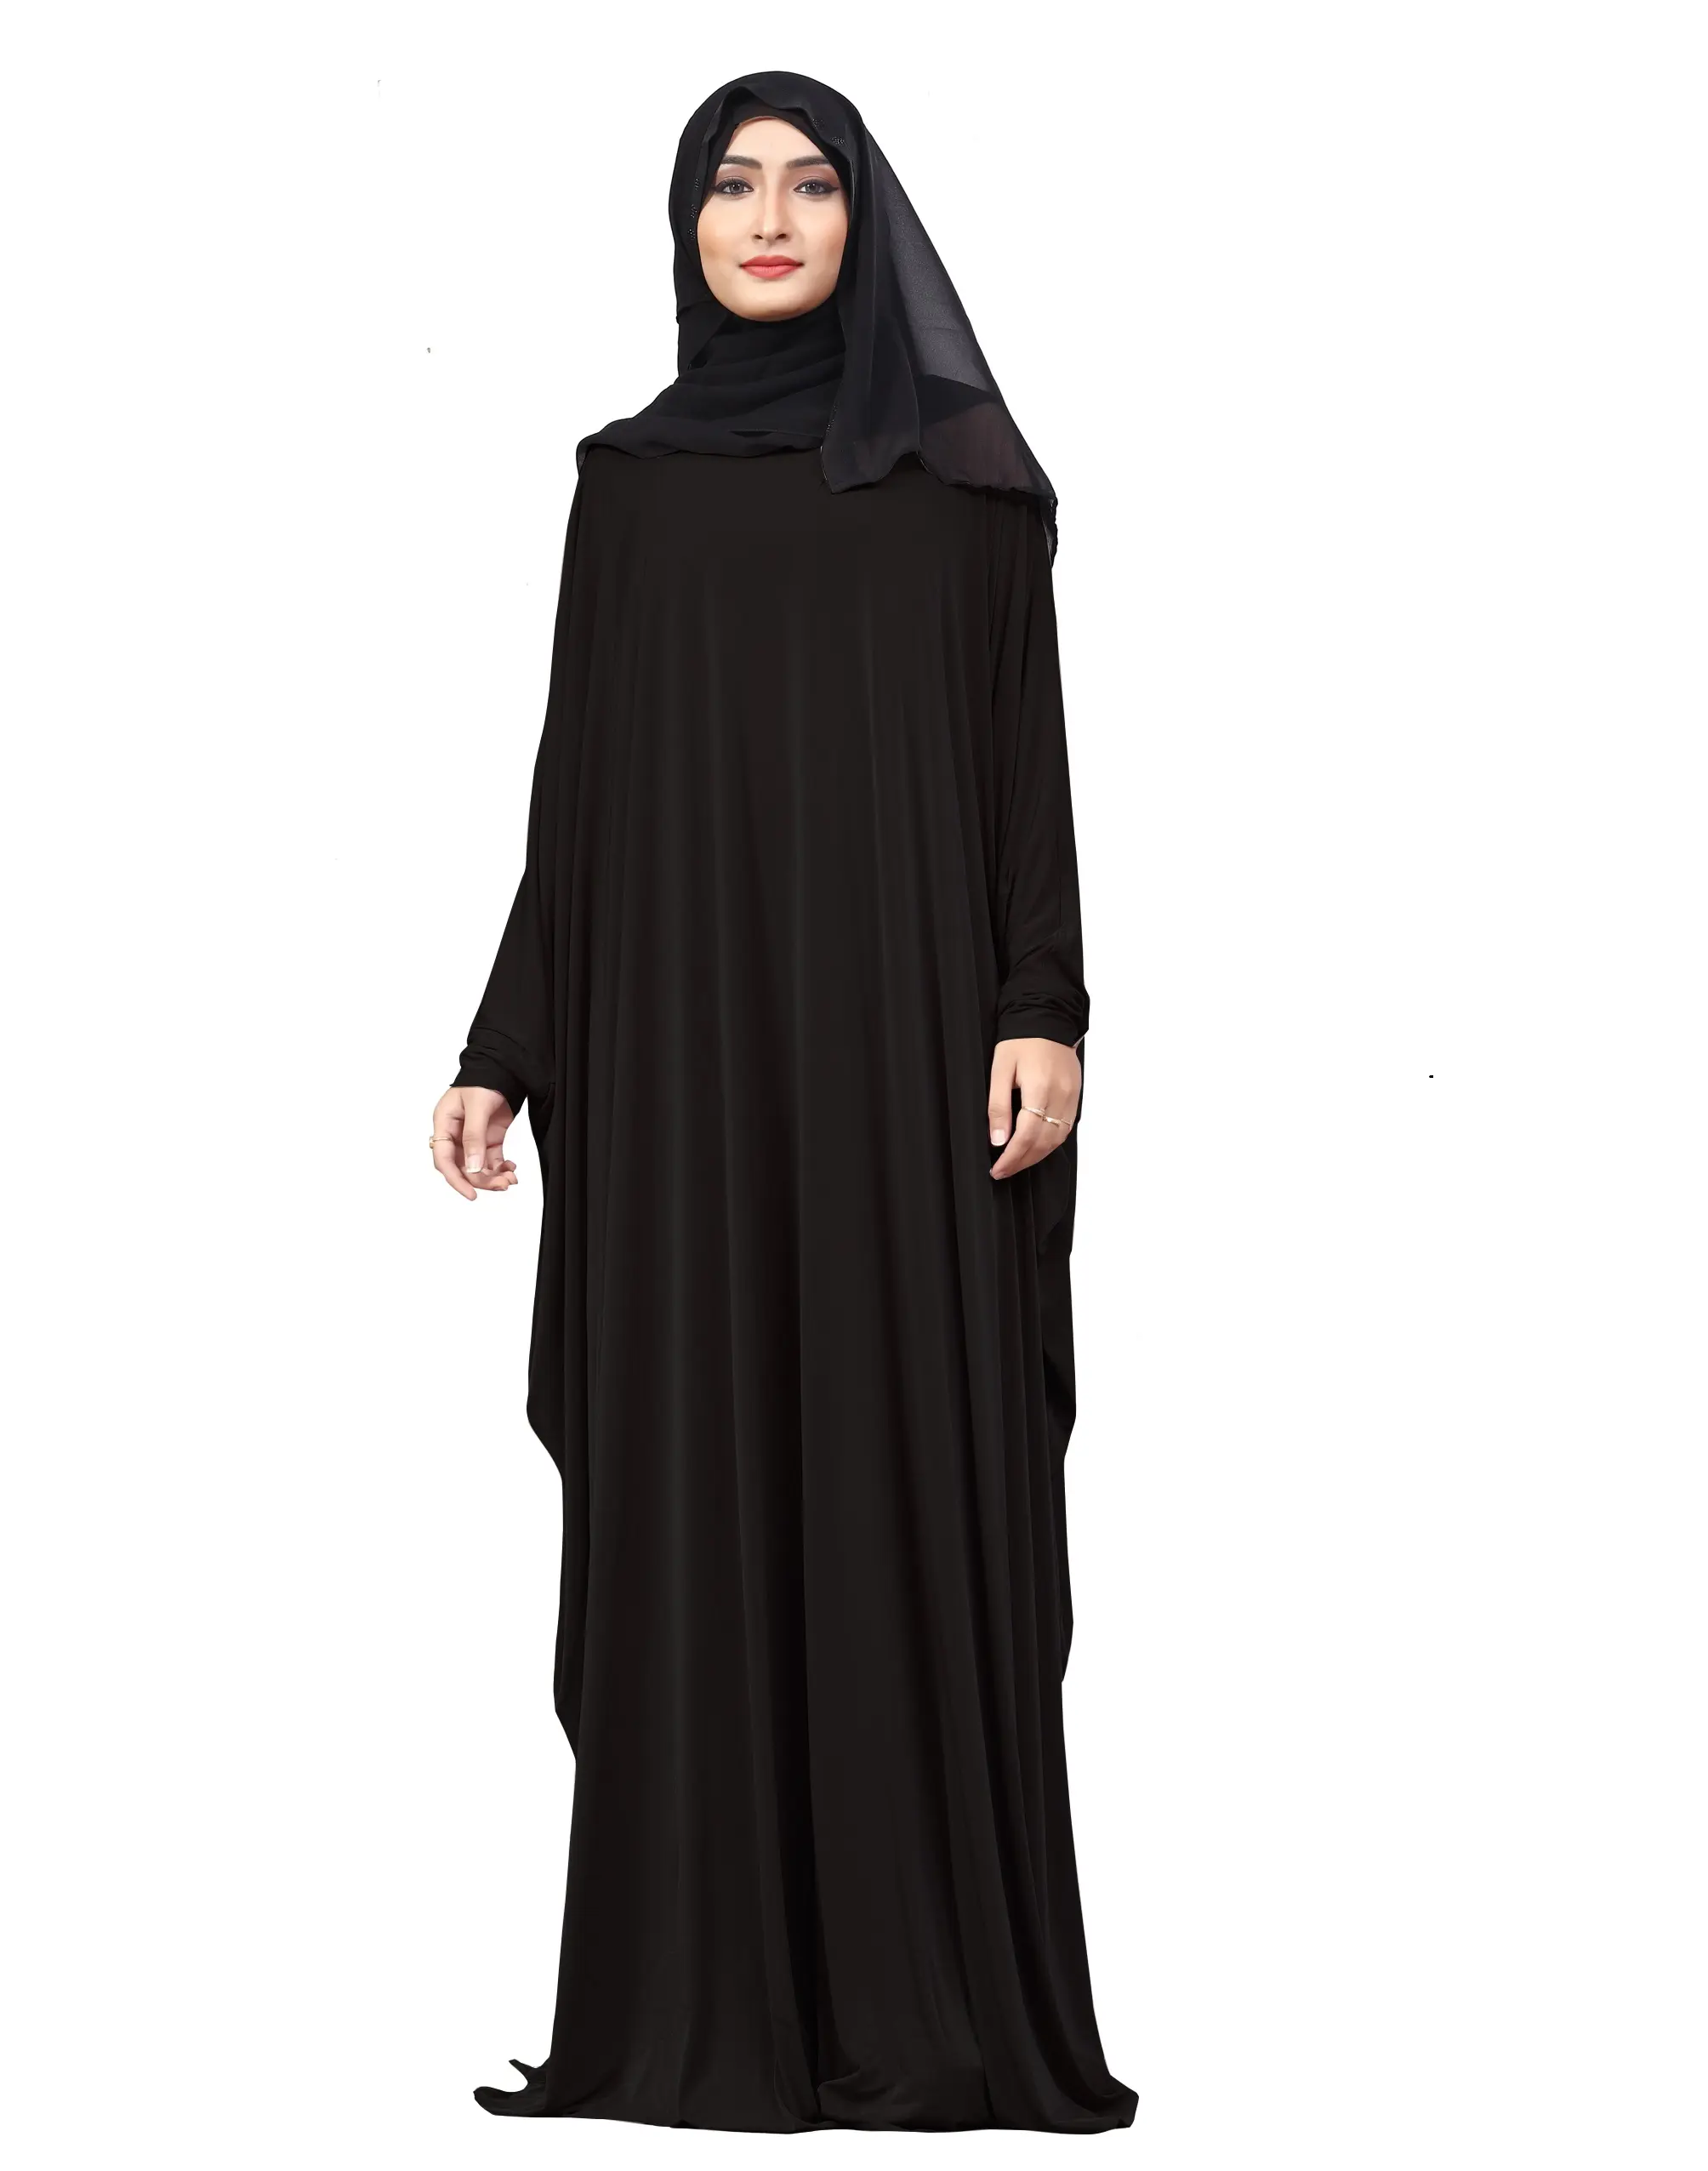 काले रंग के साथ सादे मुफ्त आकार अरबी Lykra Abaya के लिए शिफॉन दुपट्टा महिलाओं